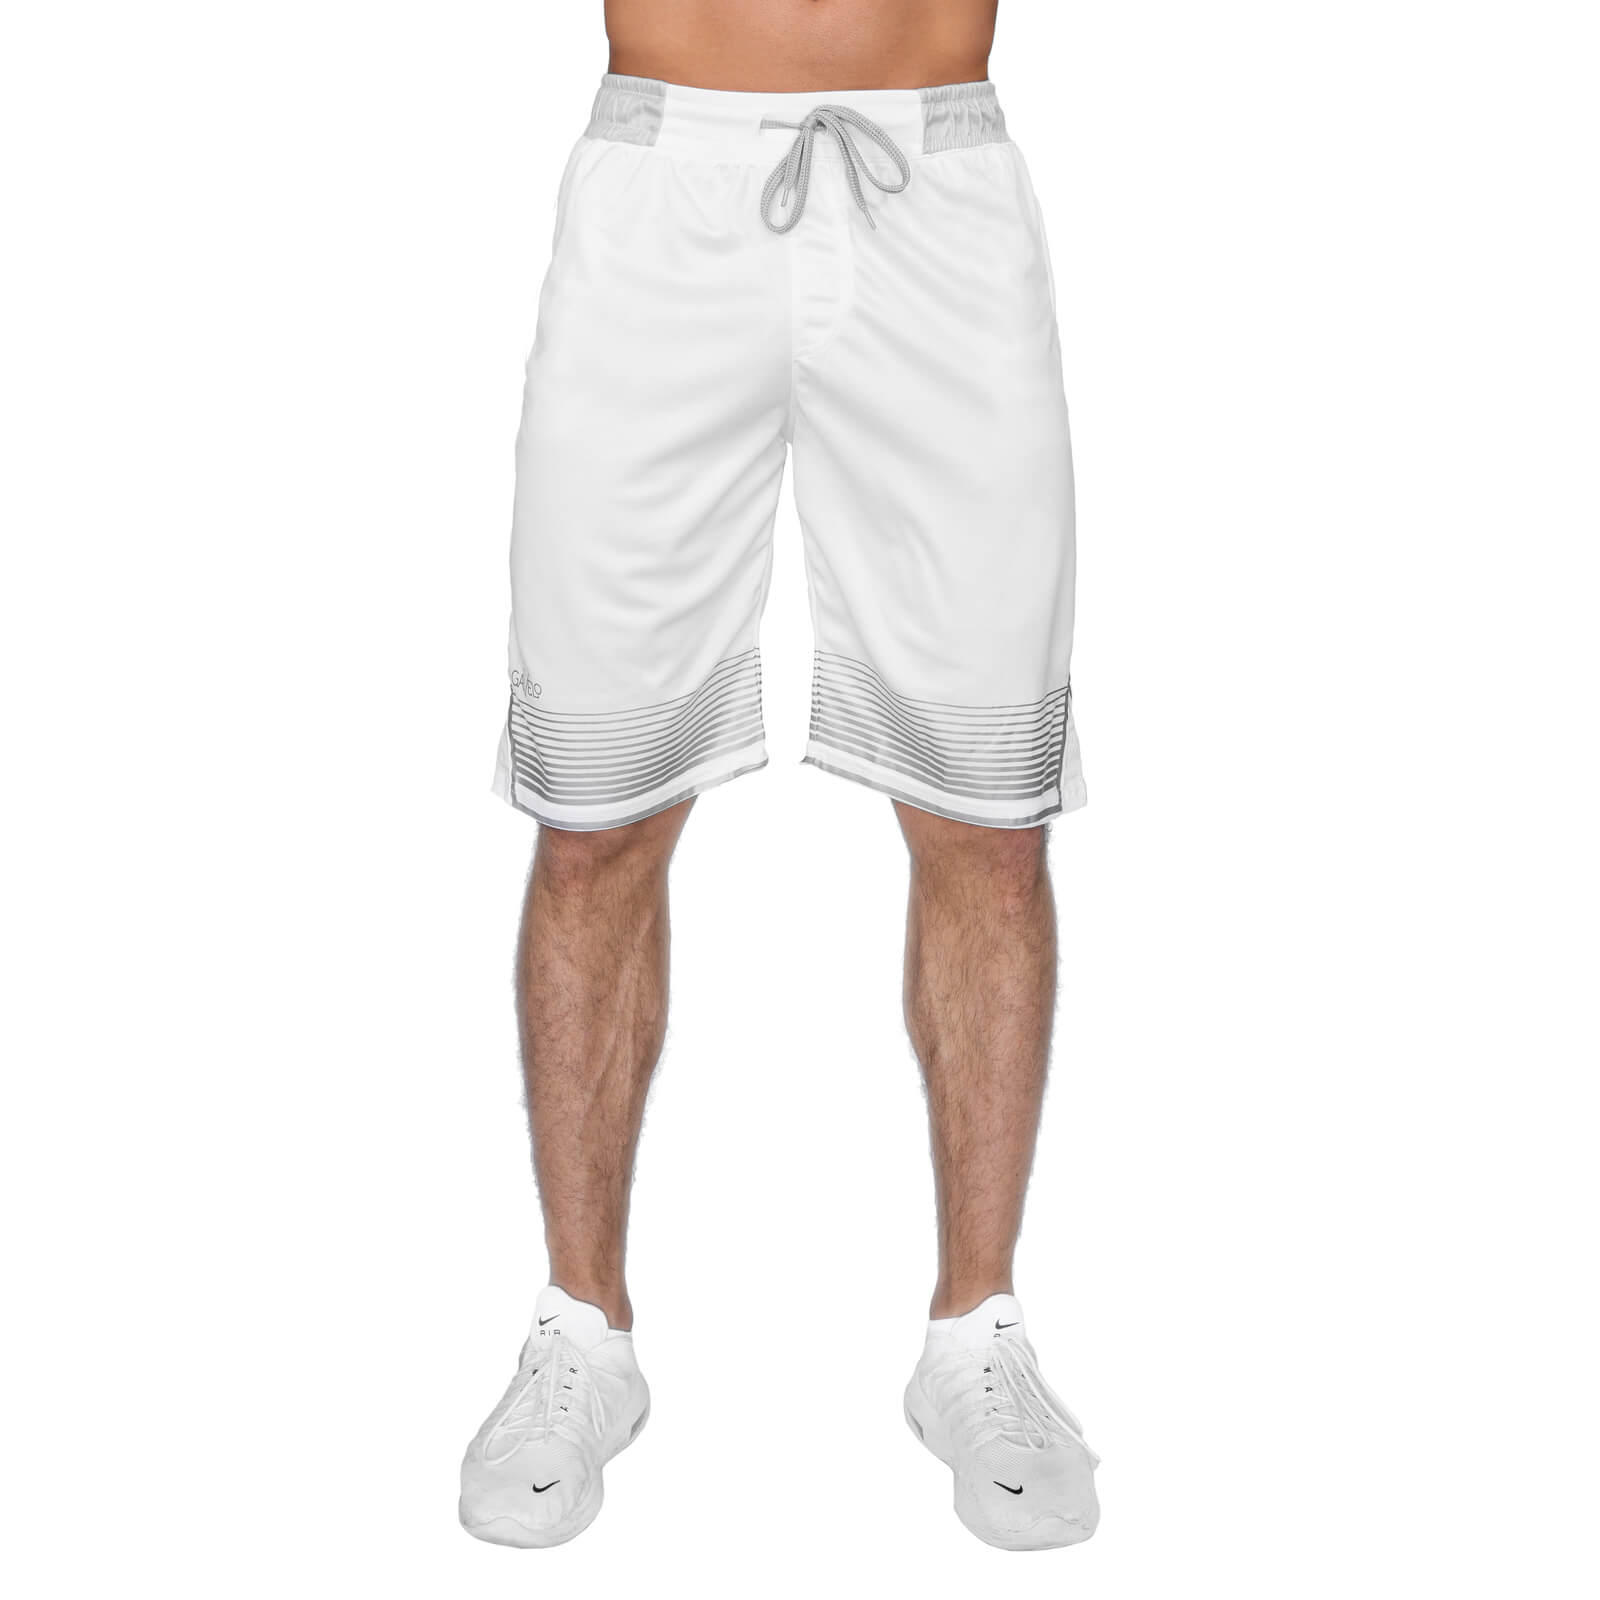 Gavelo Sniper Shorts, white, Gavelo